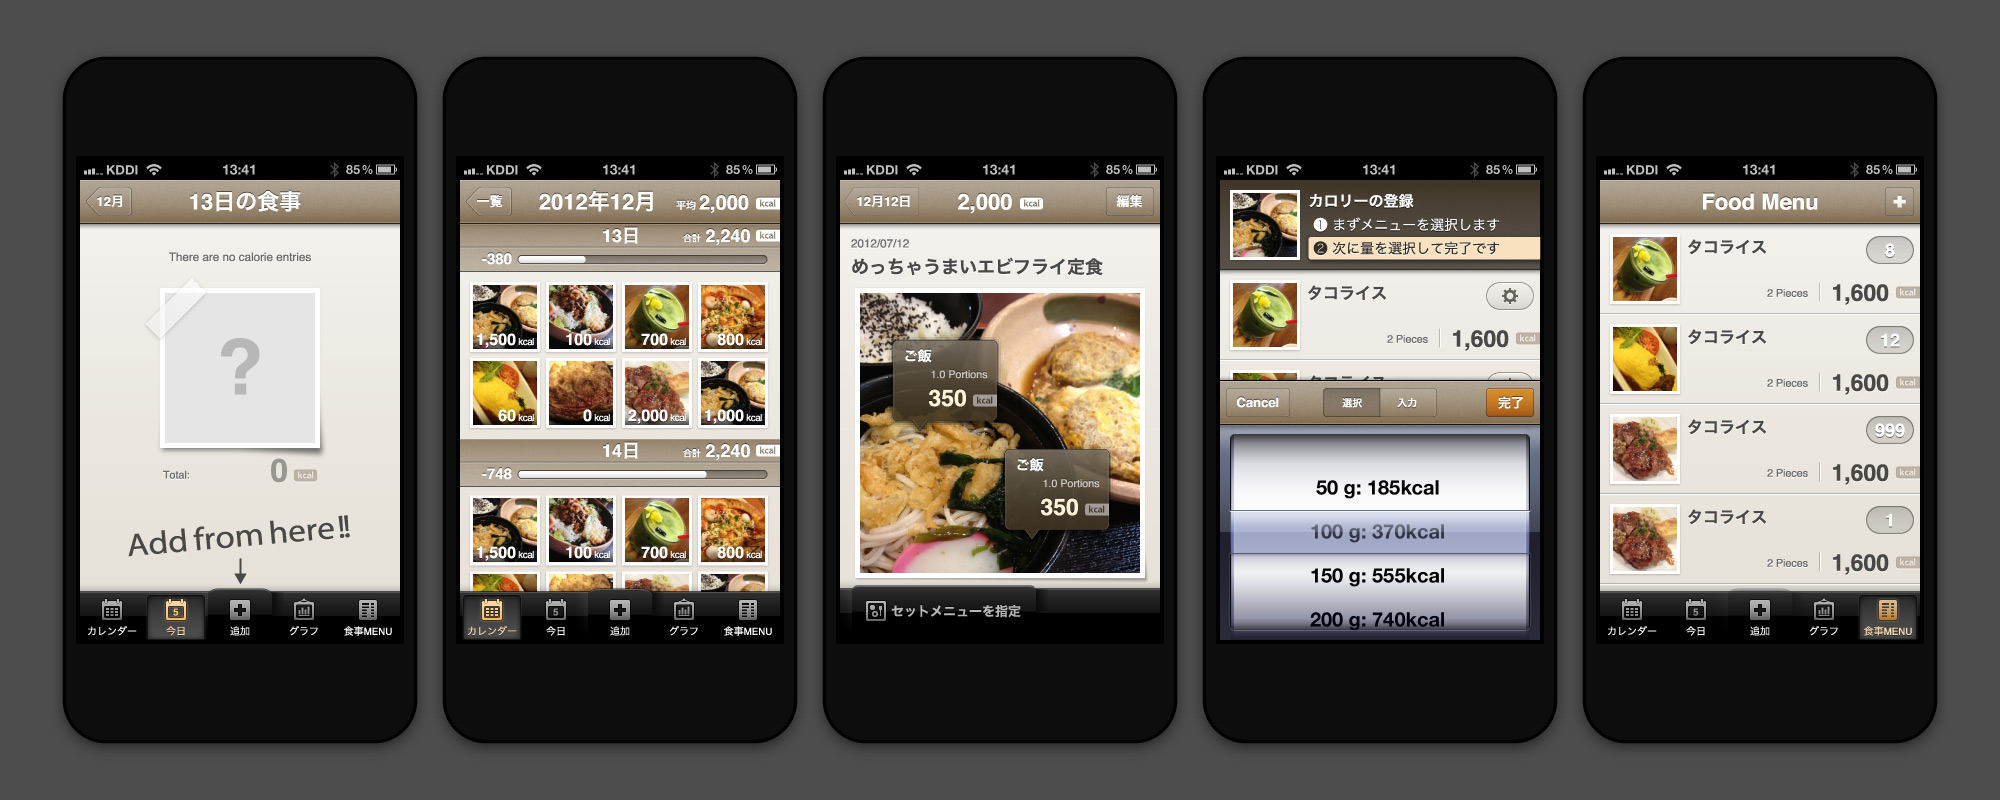 FoodLog iPhone App UI